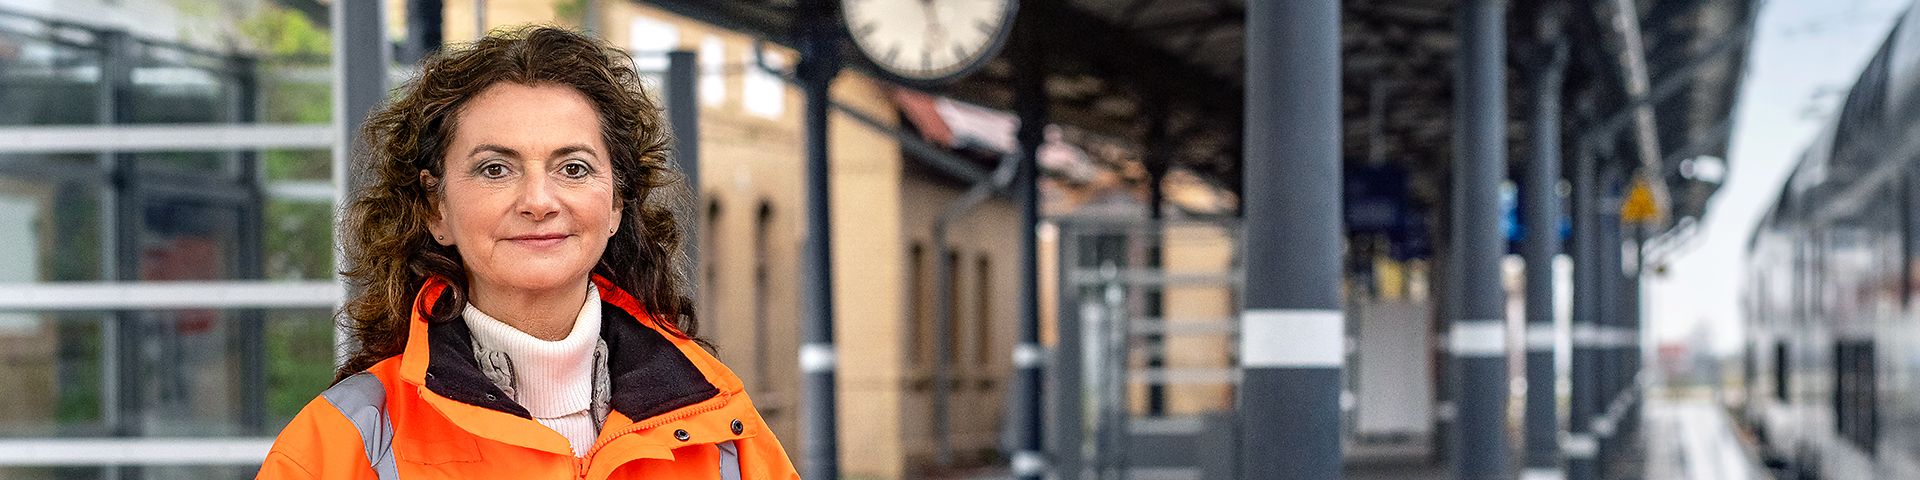 Eine Projektingenieurin steht in Warnkleidung am Bahnsteig eines Bahnhofs